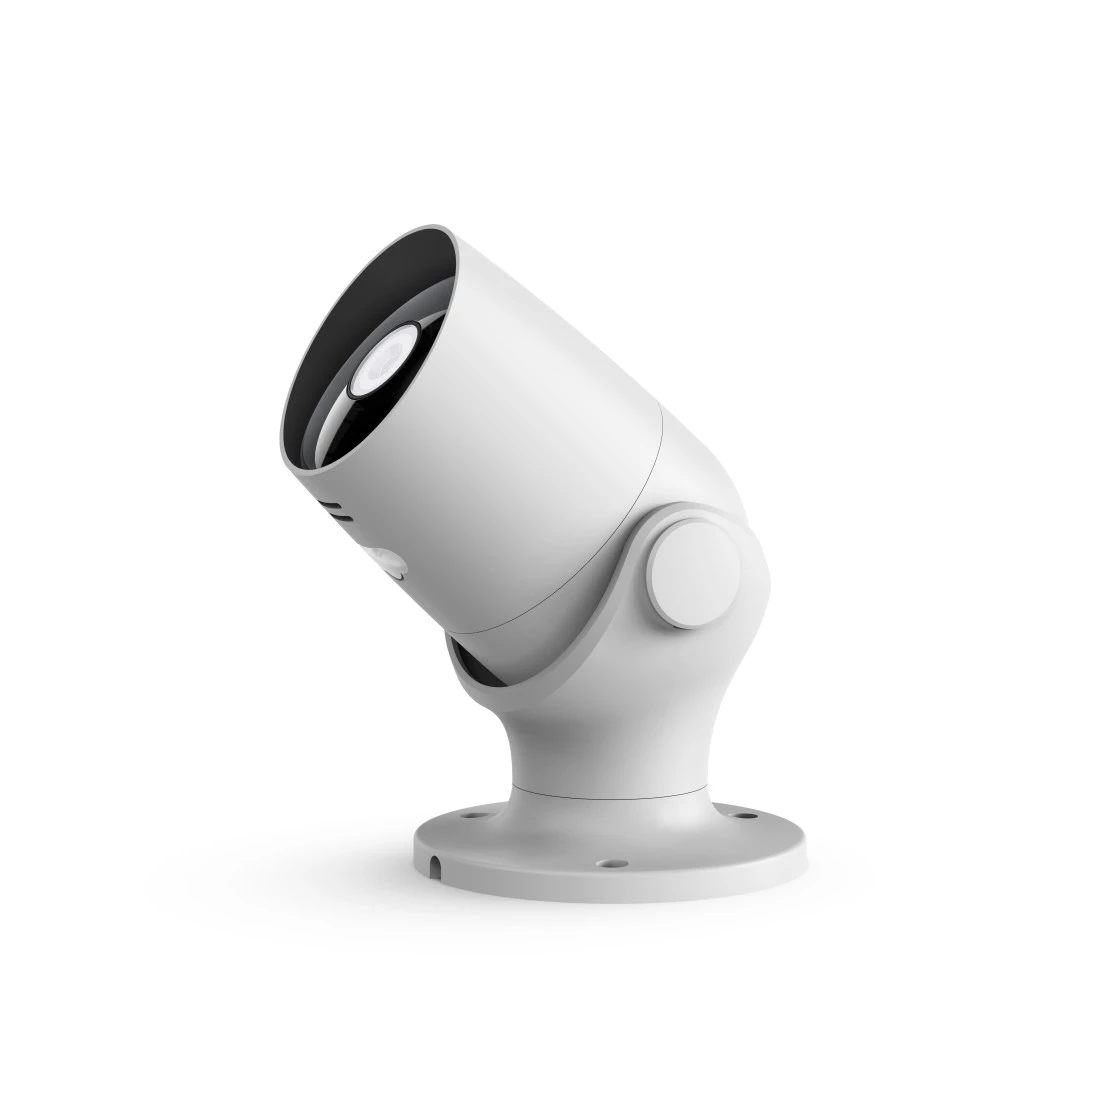 Überwachungskamera, WLAN, für außen, Nachtsicht, Aufzeichnung, 1080p, Weiß  | Hama